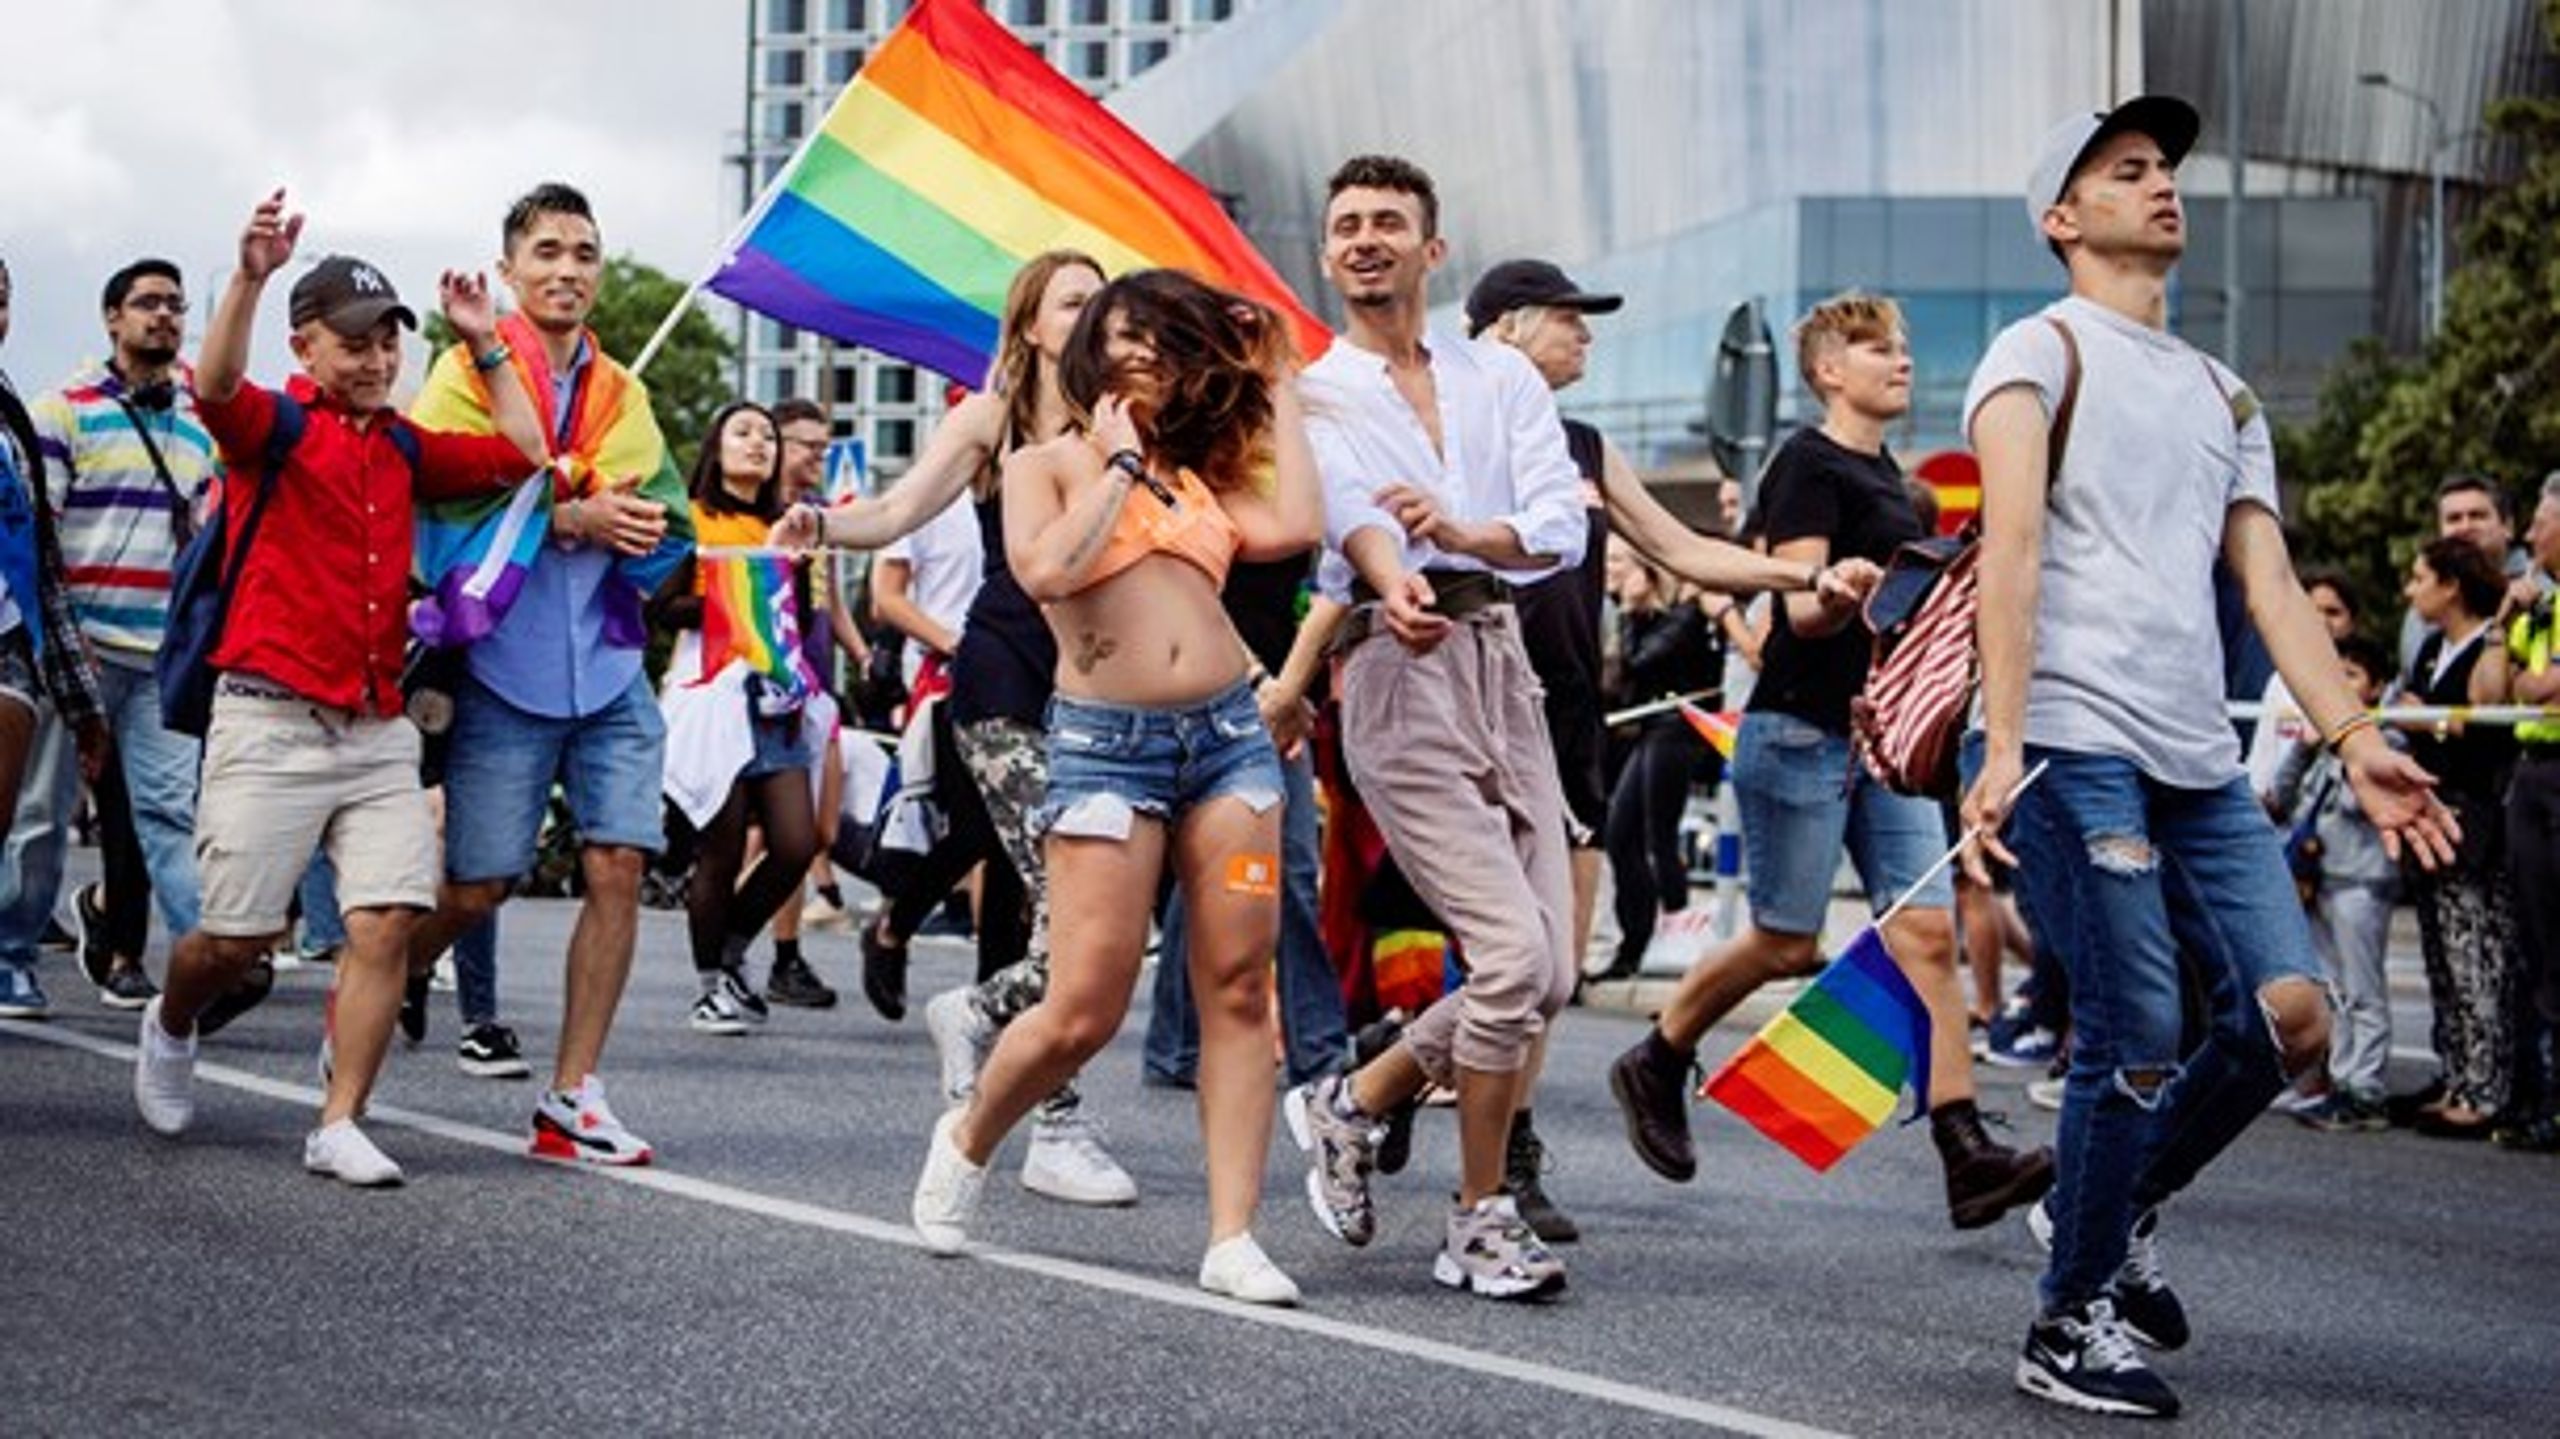 RFSL har inga arrangemang i Almedalen i år efter hot från nazister. Det är ett oroande tecken i tiden, anser artikelförfattarna. Bilden är från Pride i Stockholm.